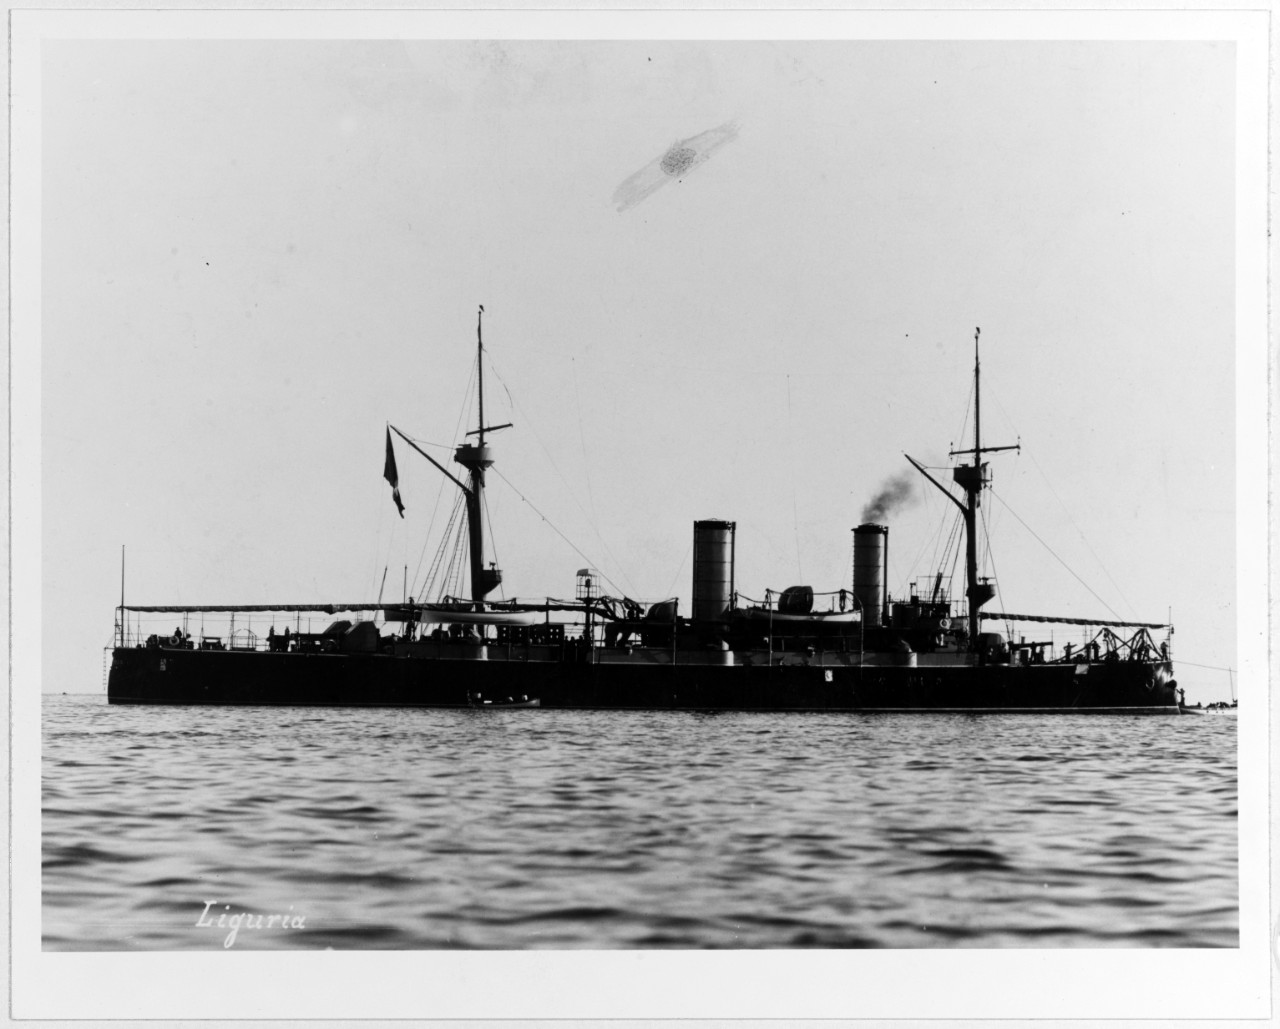 LIGURIA (Italian protected cruiser, 1893-1921)